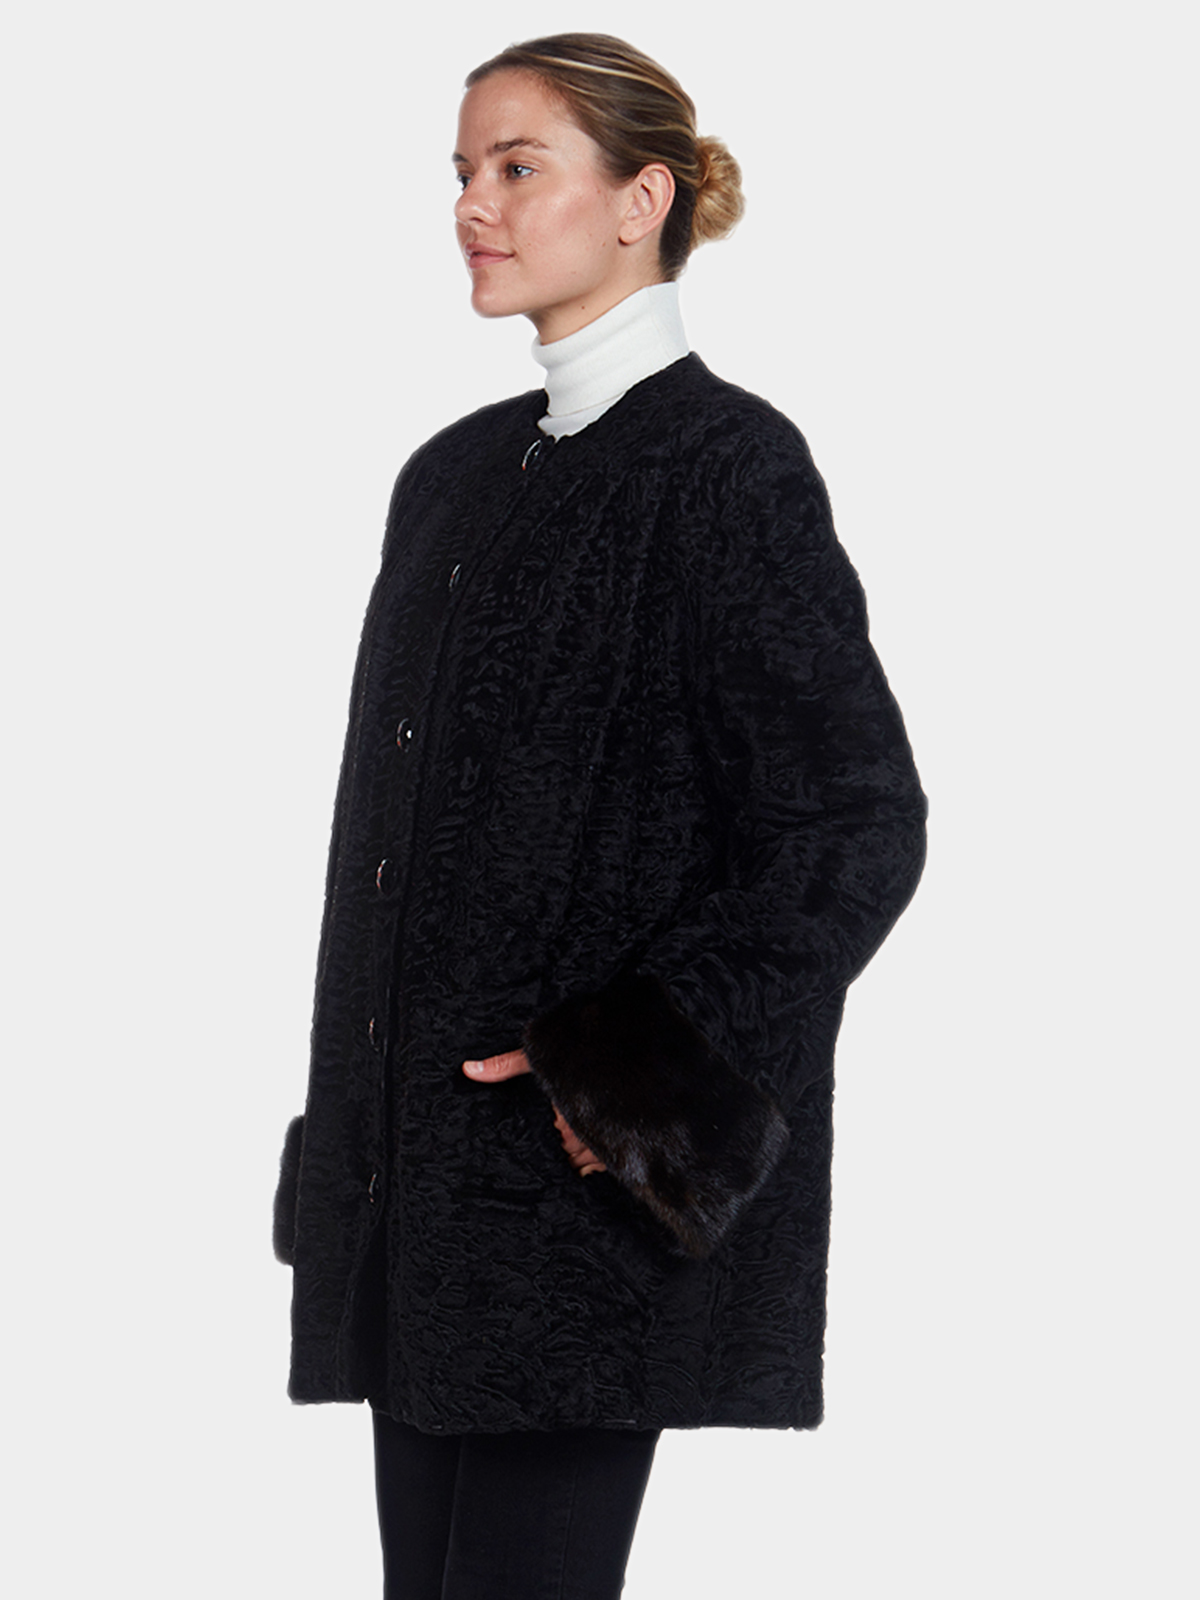 Alixandre New York Black Dyed Lamb and Mink Fur Stroller | Estate Furs